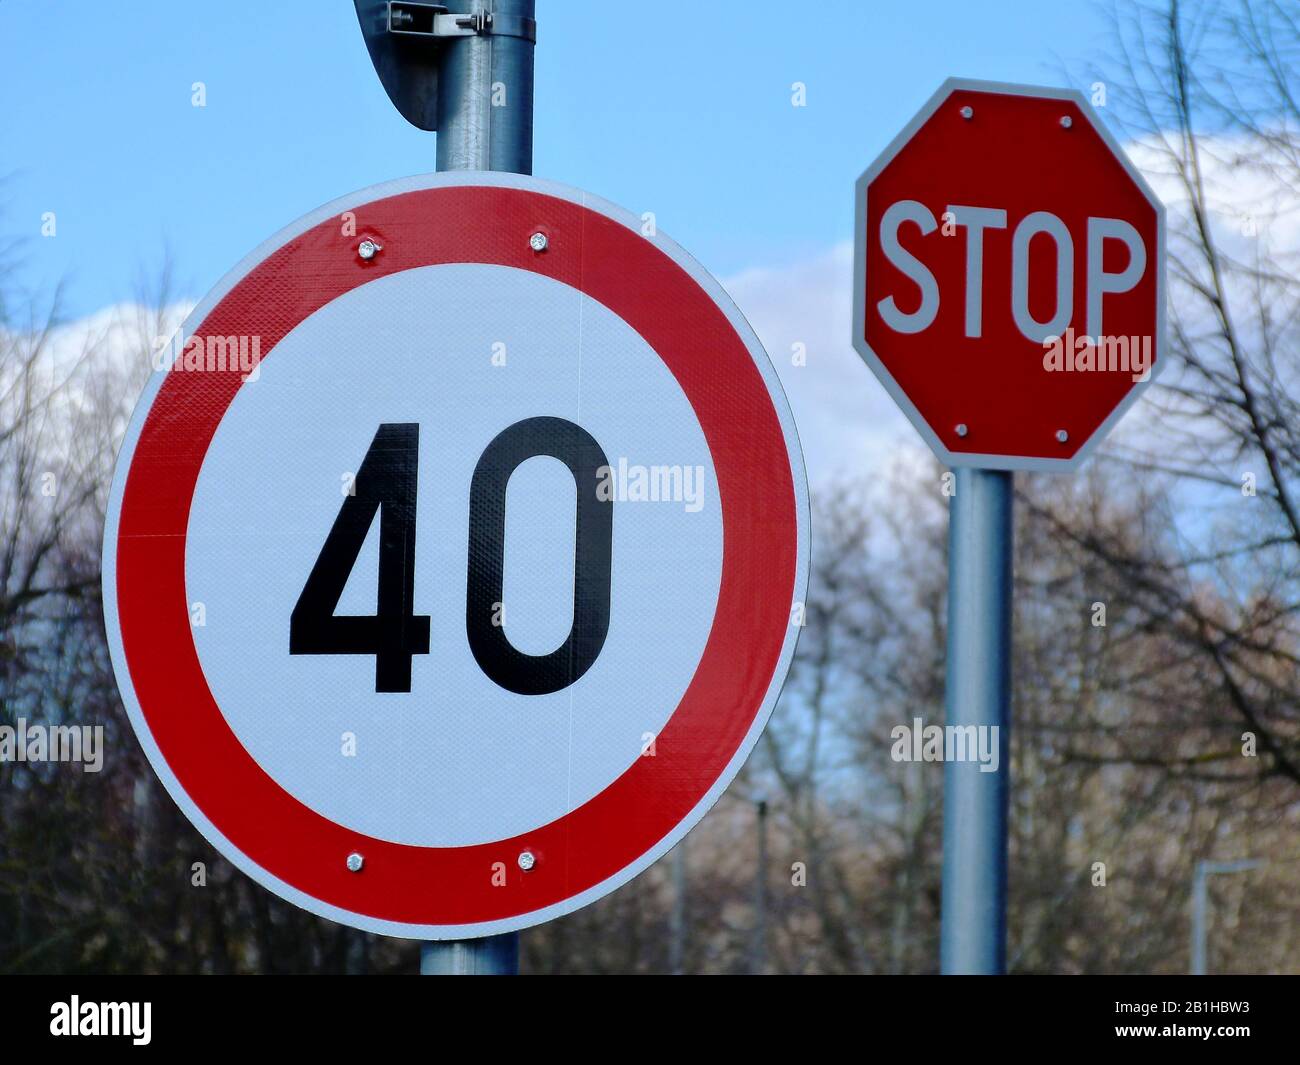 Weißes Rundfahrts- und Verkehrszeichen mit roter Umrandung und der Zahl von 40, die die Geschwindigkeit begrenzen und maximieren. Hellblauer Himmel und weiße Wolken darüber. Stockfoto